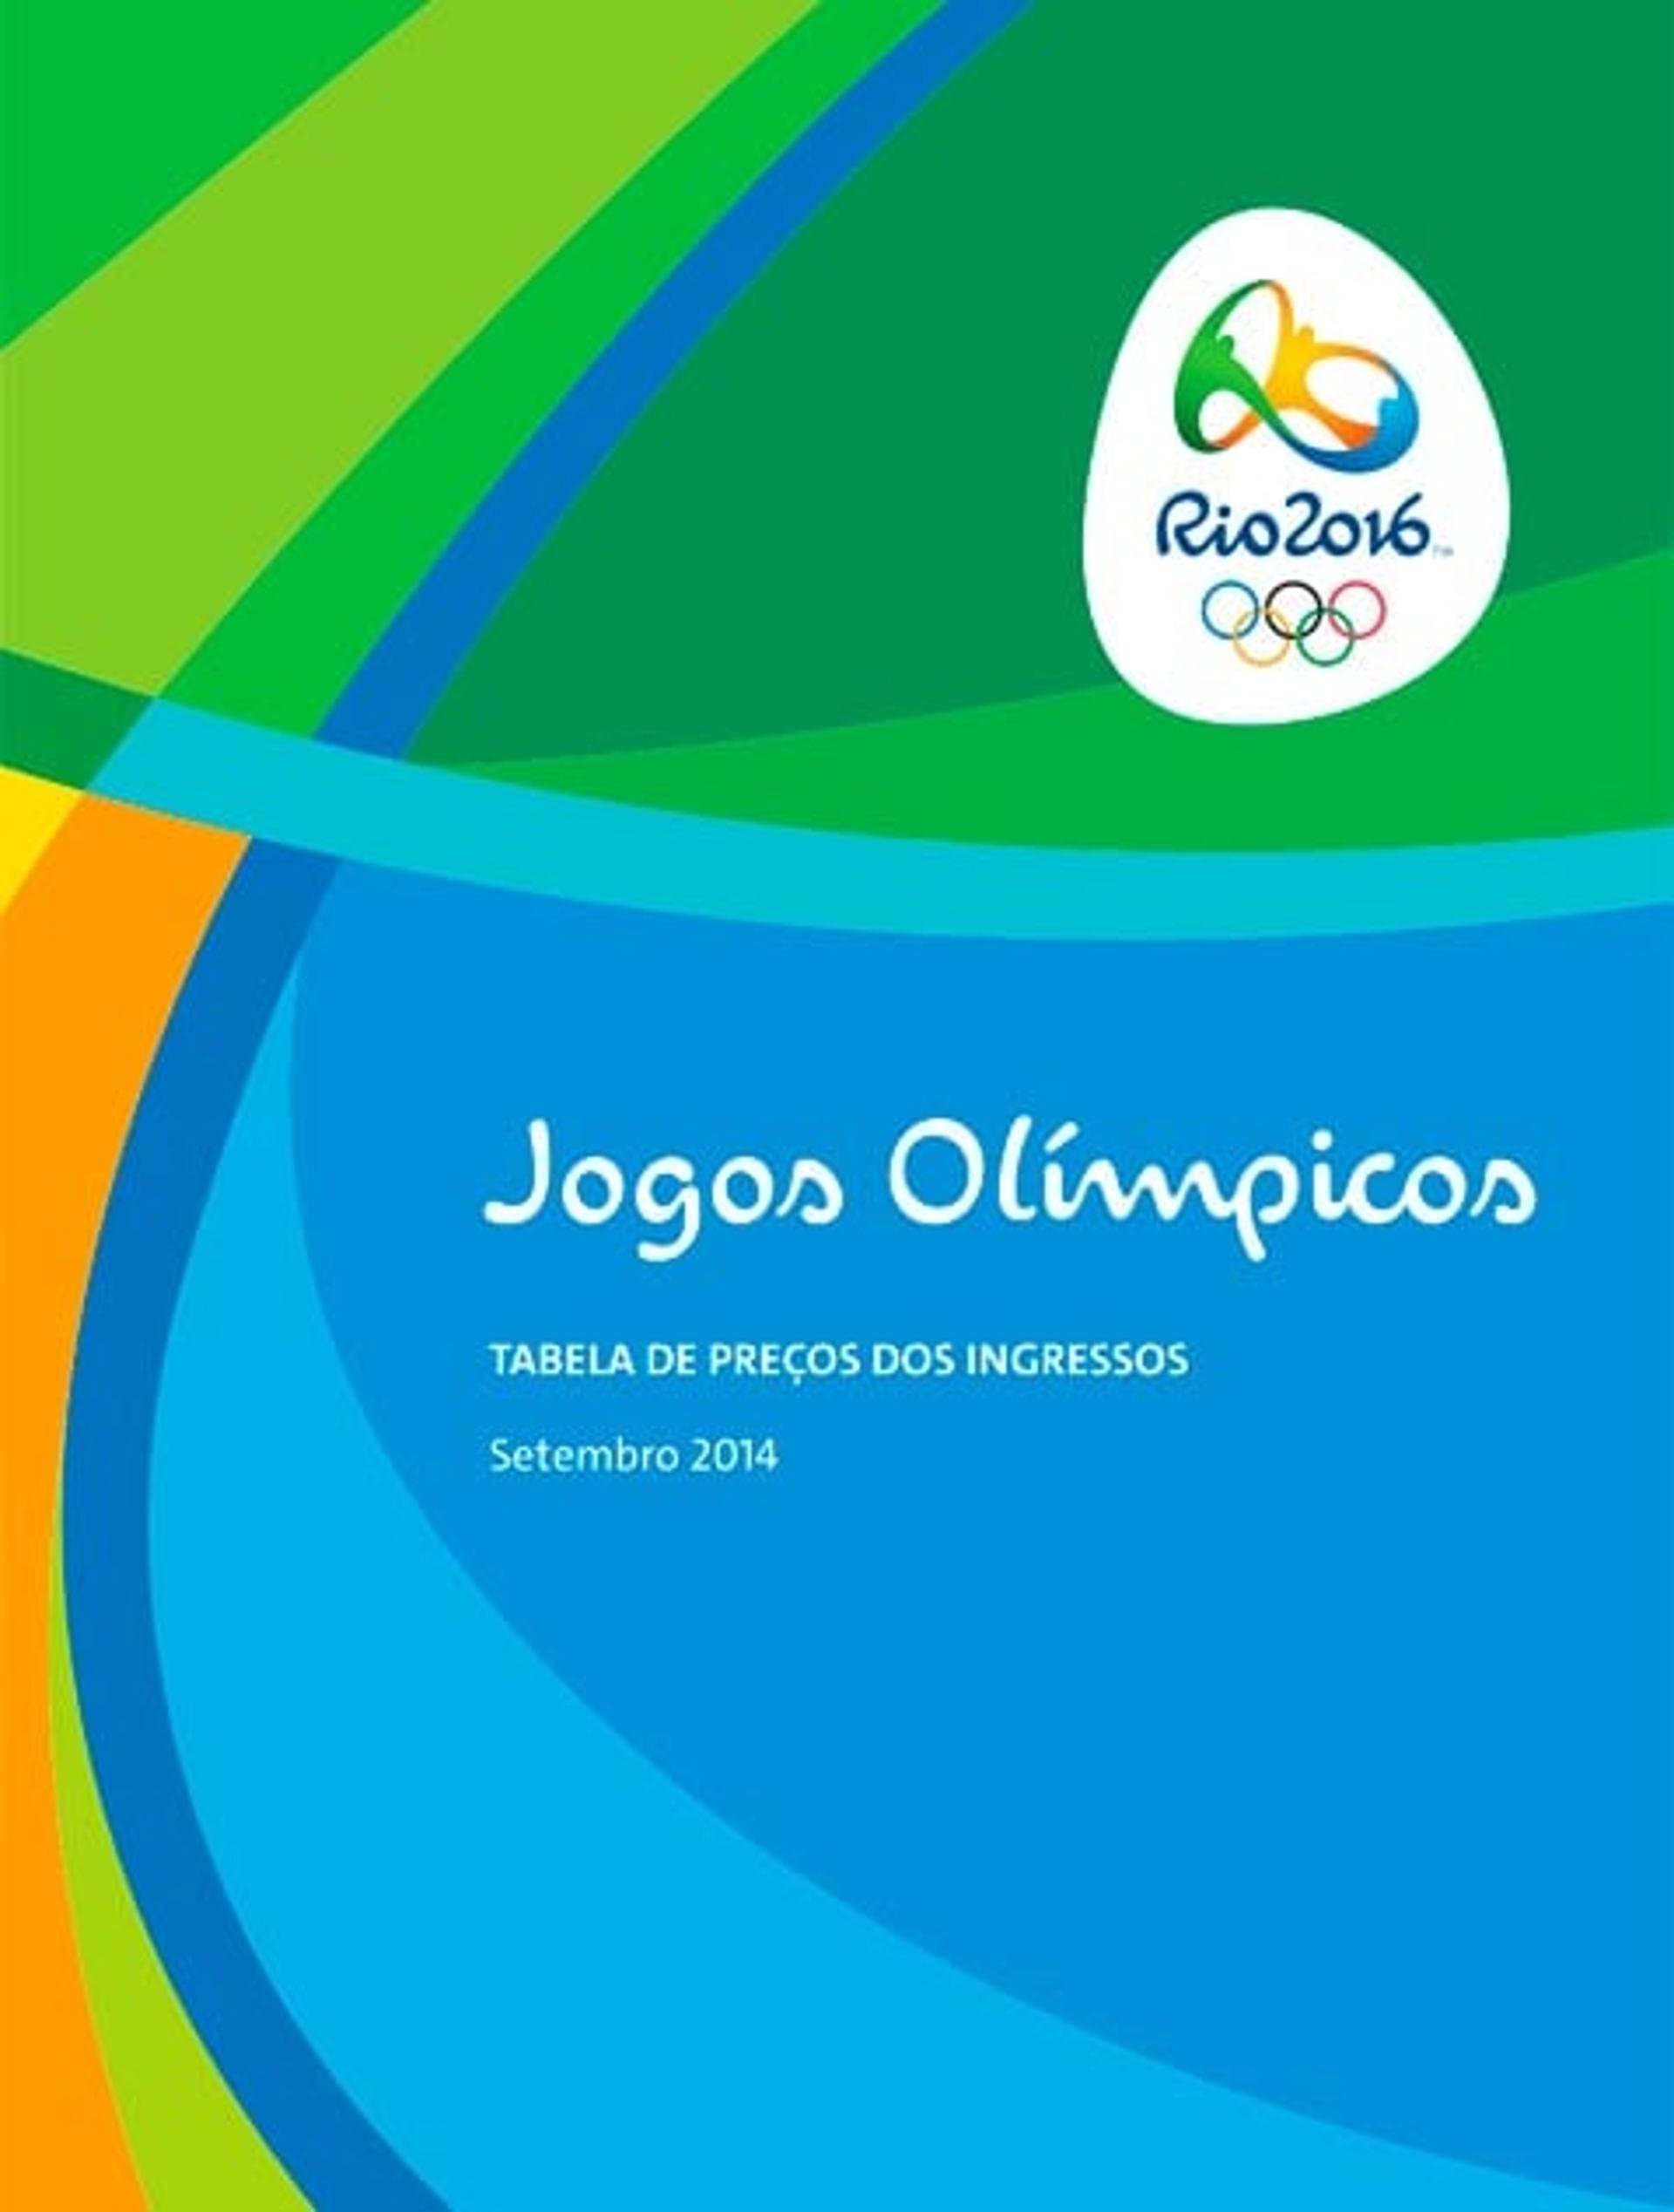 Ingressos - Jogos Olímpicos (Foto: Divulgação)